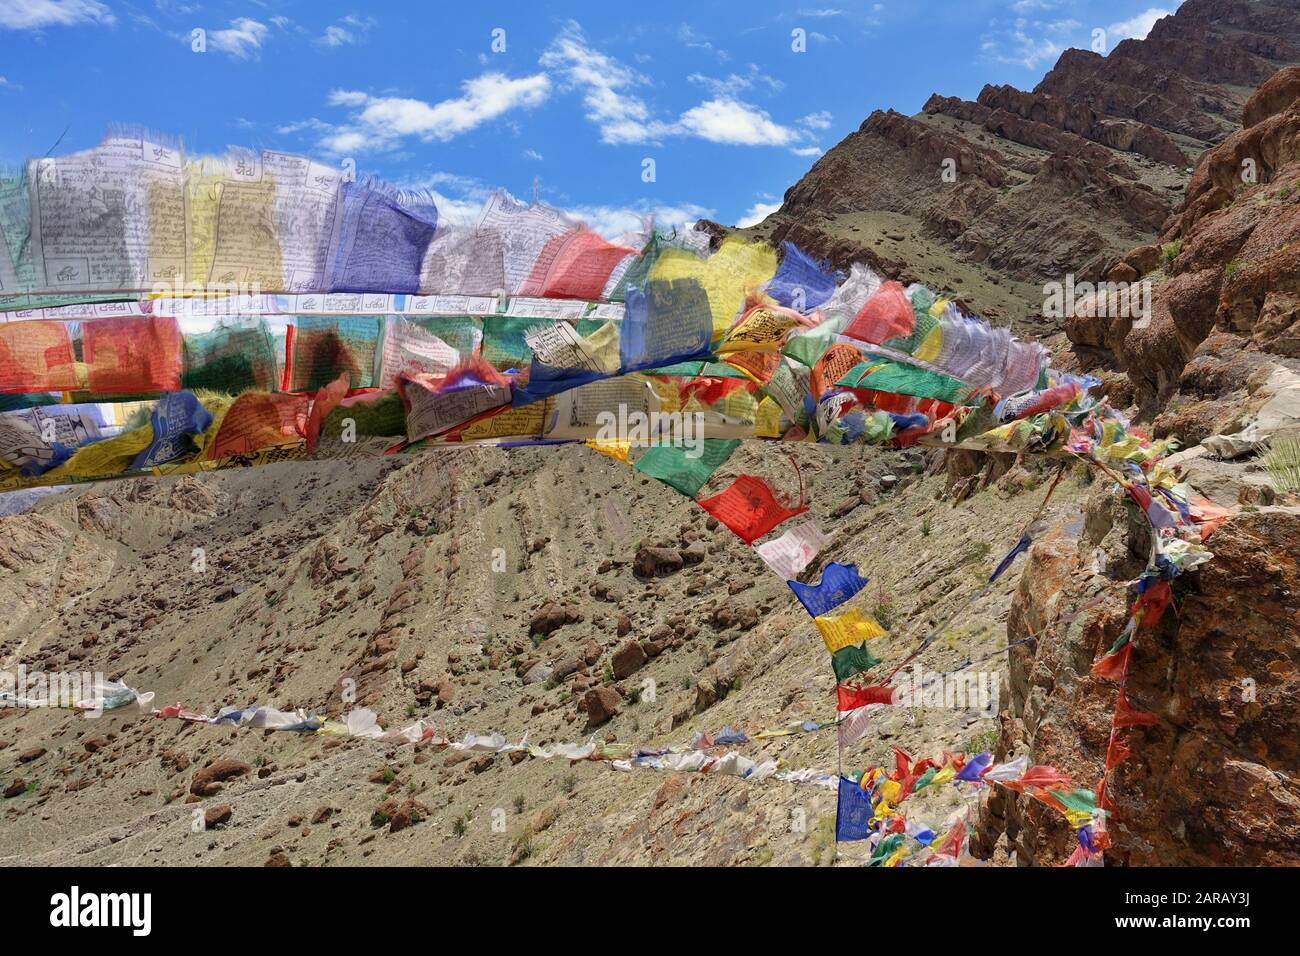 Drapeaux de prière tibétains du monastère de l'Héme dans le district de Leh du Ladakh dans l'Himalaya - Inde 2019 Banque D'Images